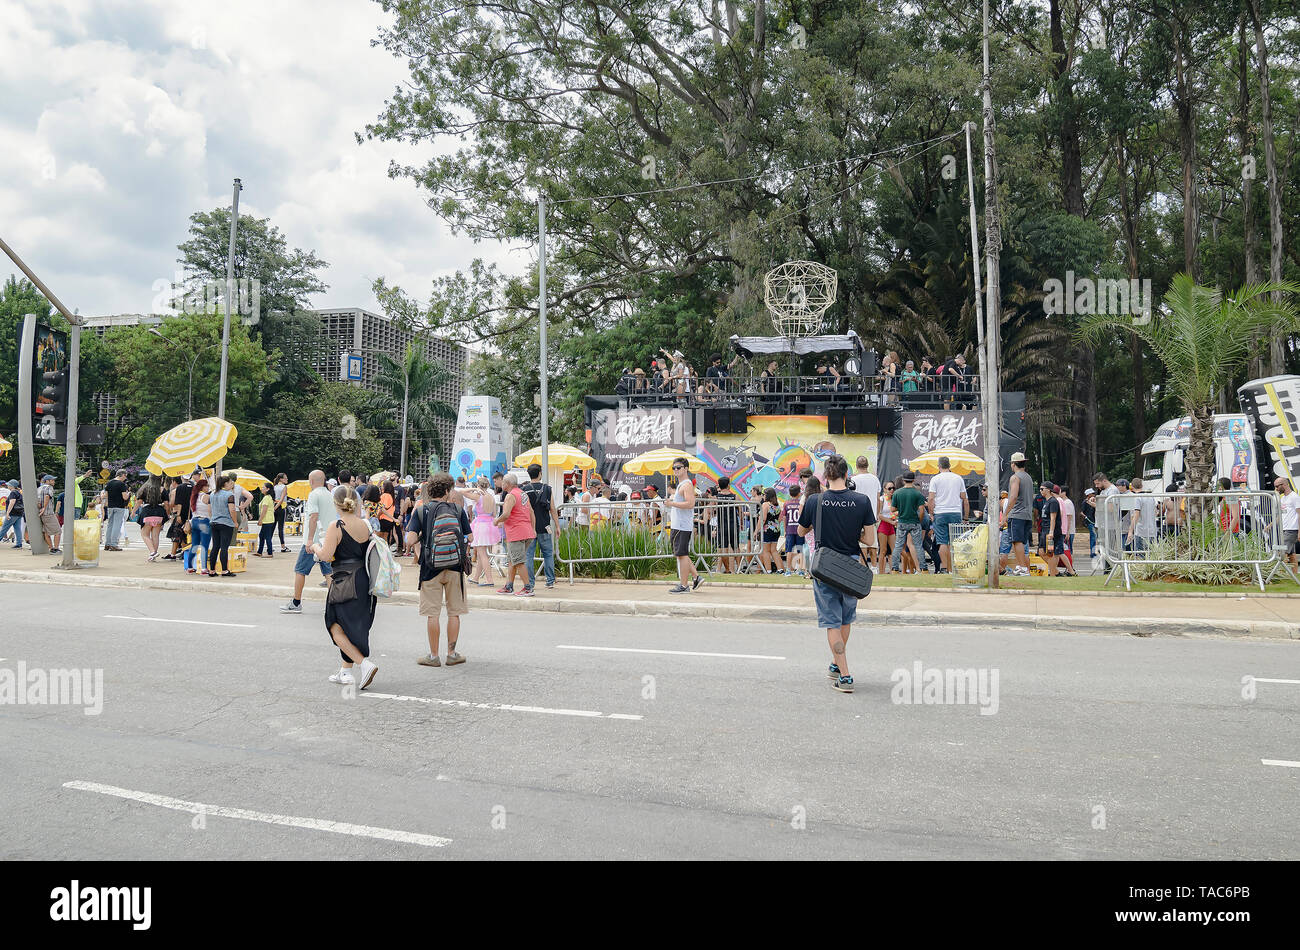 Sao Paulo, SP, Brasil - Marzo 02, 2019: el carnaval llamado bloque Favela Med-Mex en el parque de Ibirapuera. Carnaval de calle inspirado en la cultura del desierto. Foto de stock